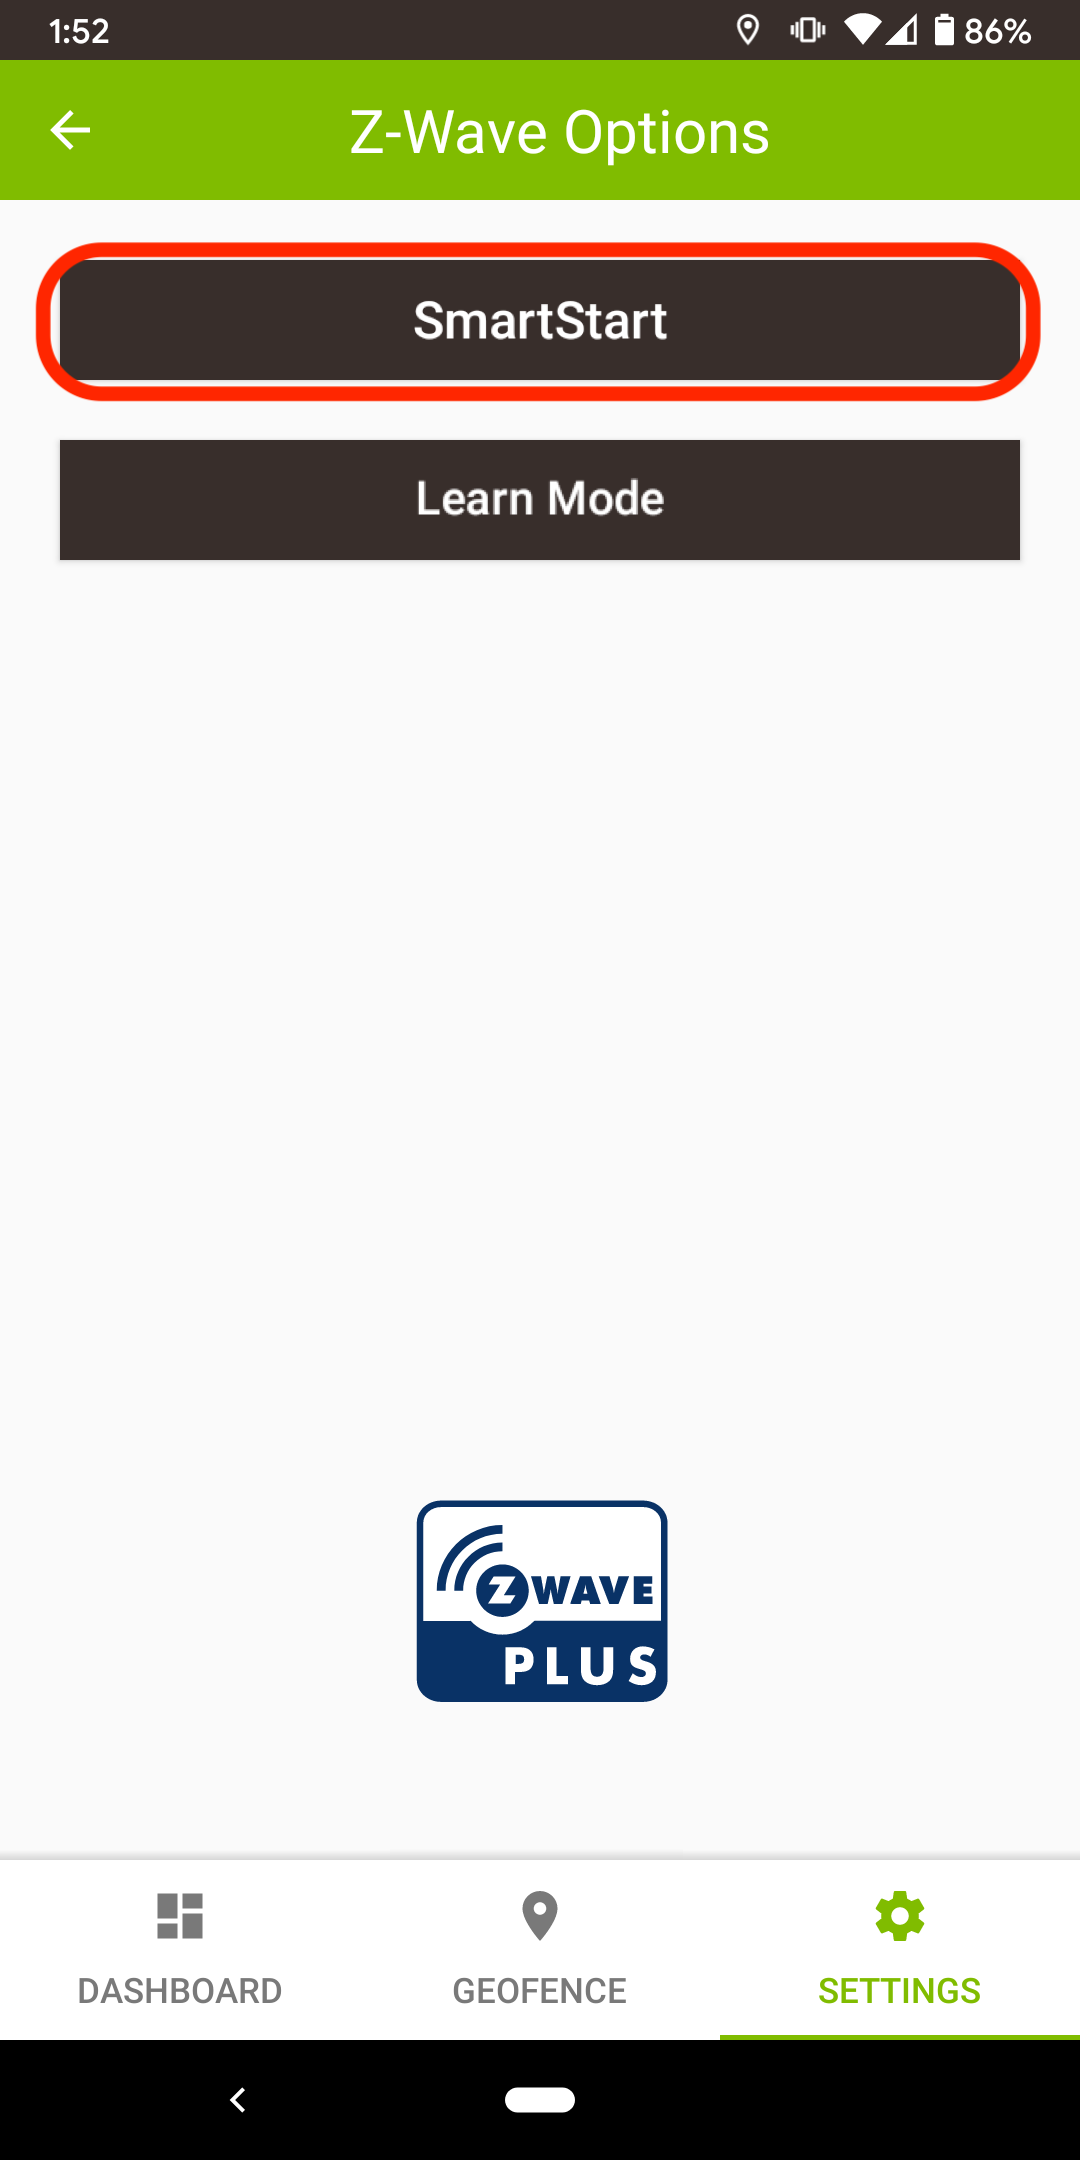 Z-Wave S2 mobile SmartStart option v2.png